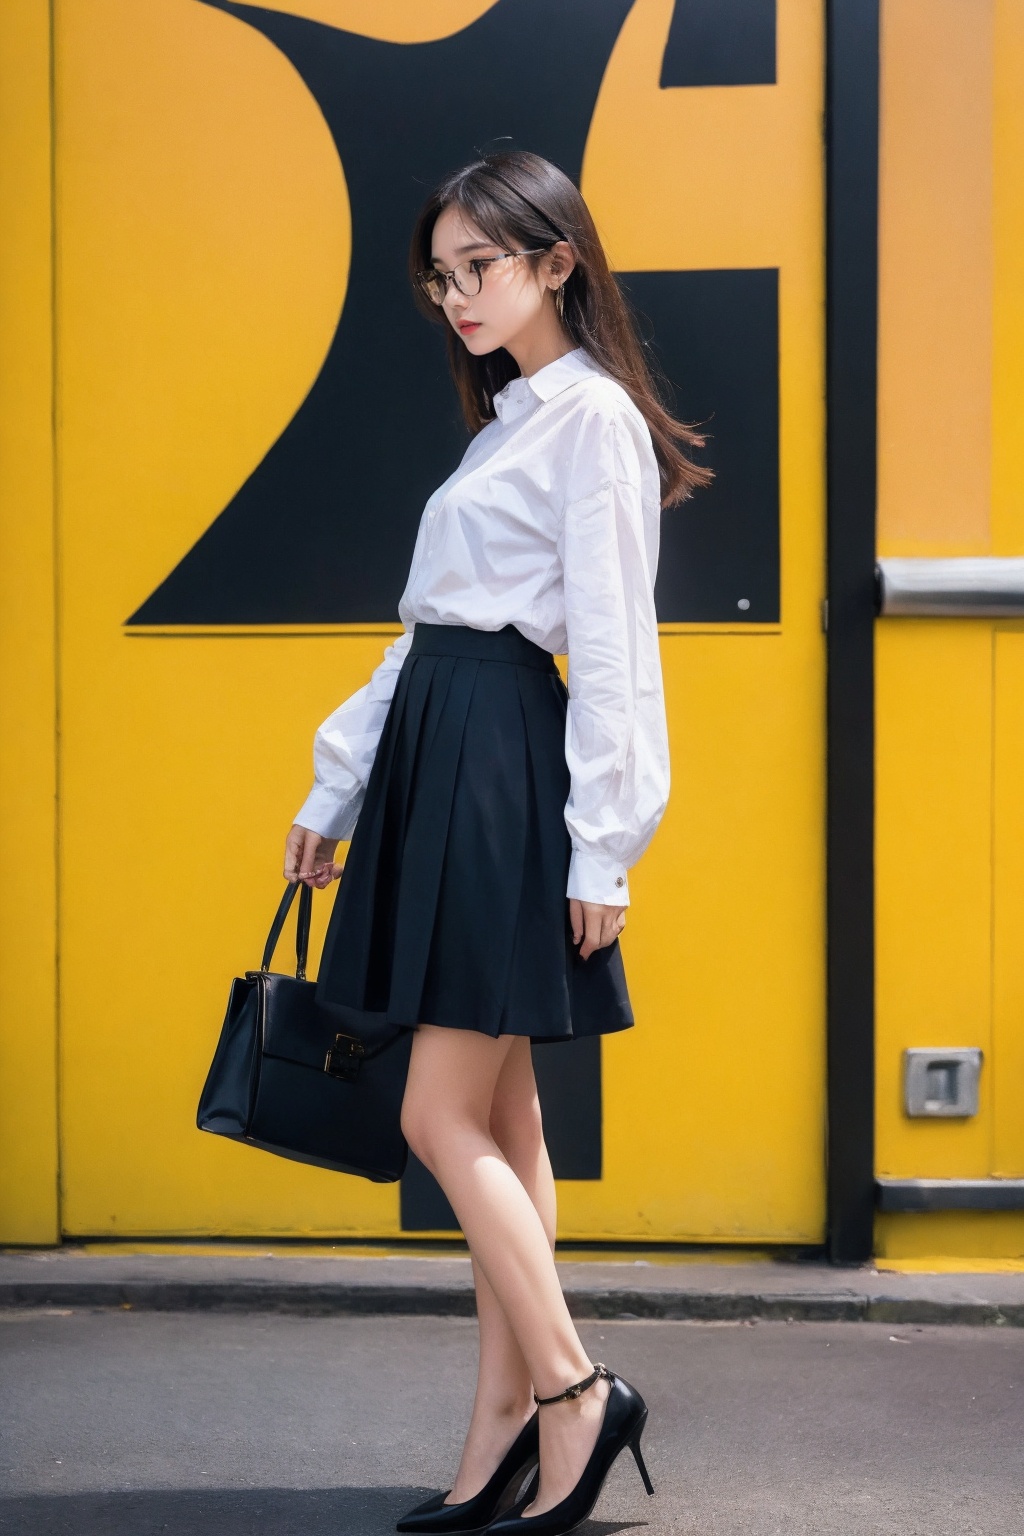 1girl, solo, white shirt, upper body, glasses, (from side), skirt, high heel shoes